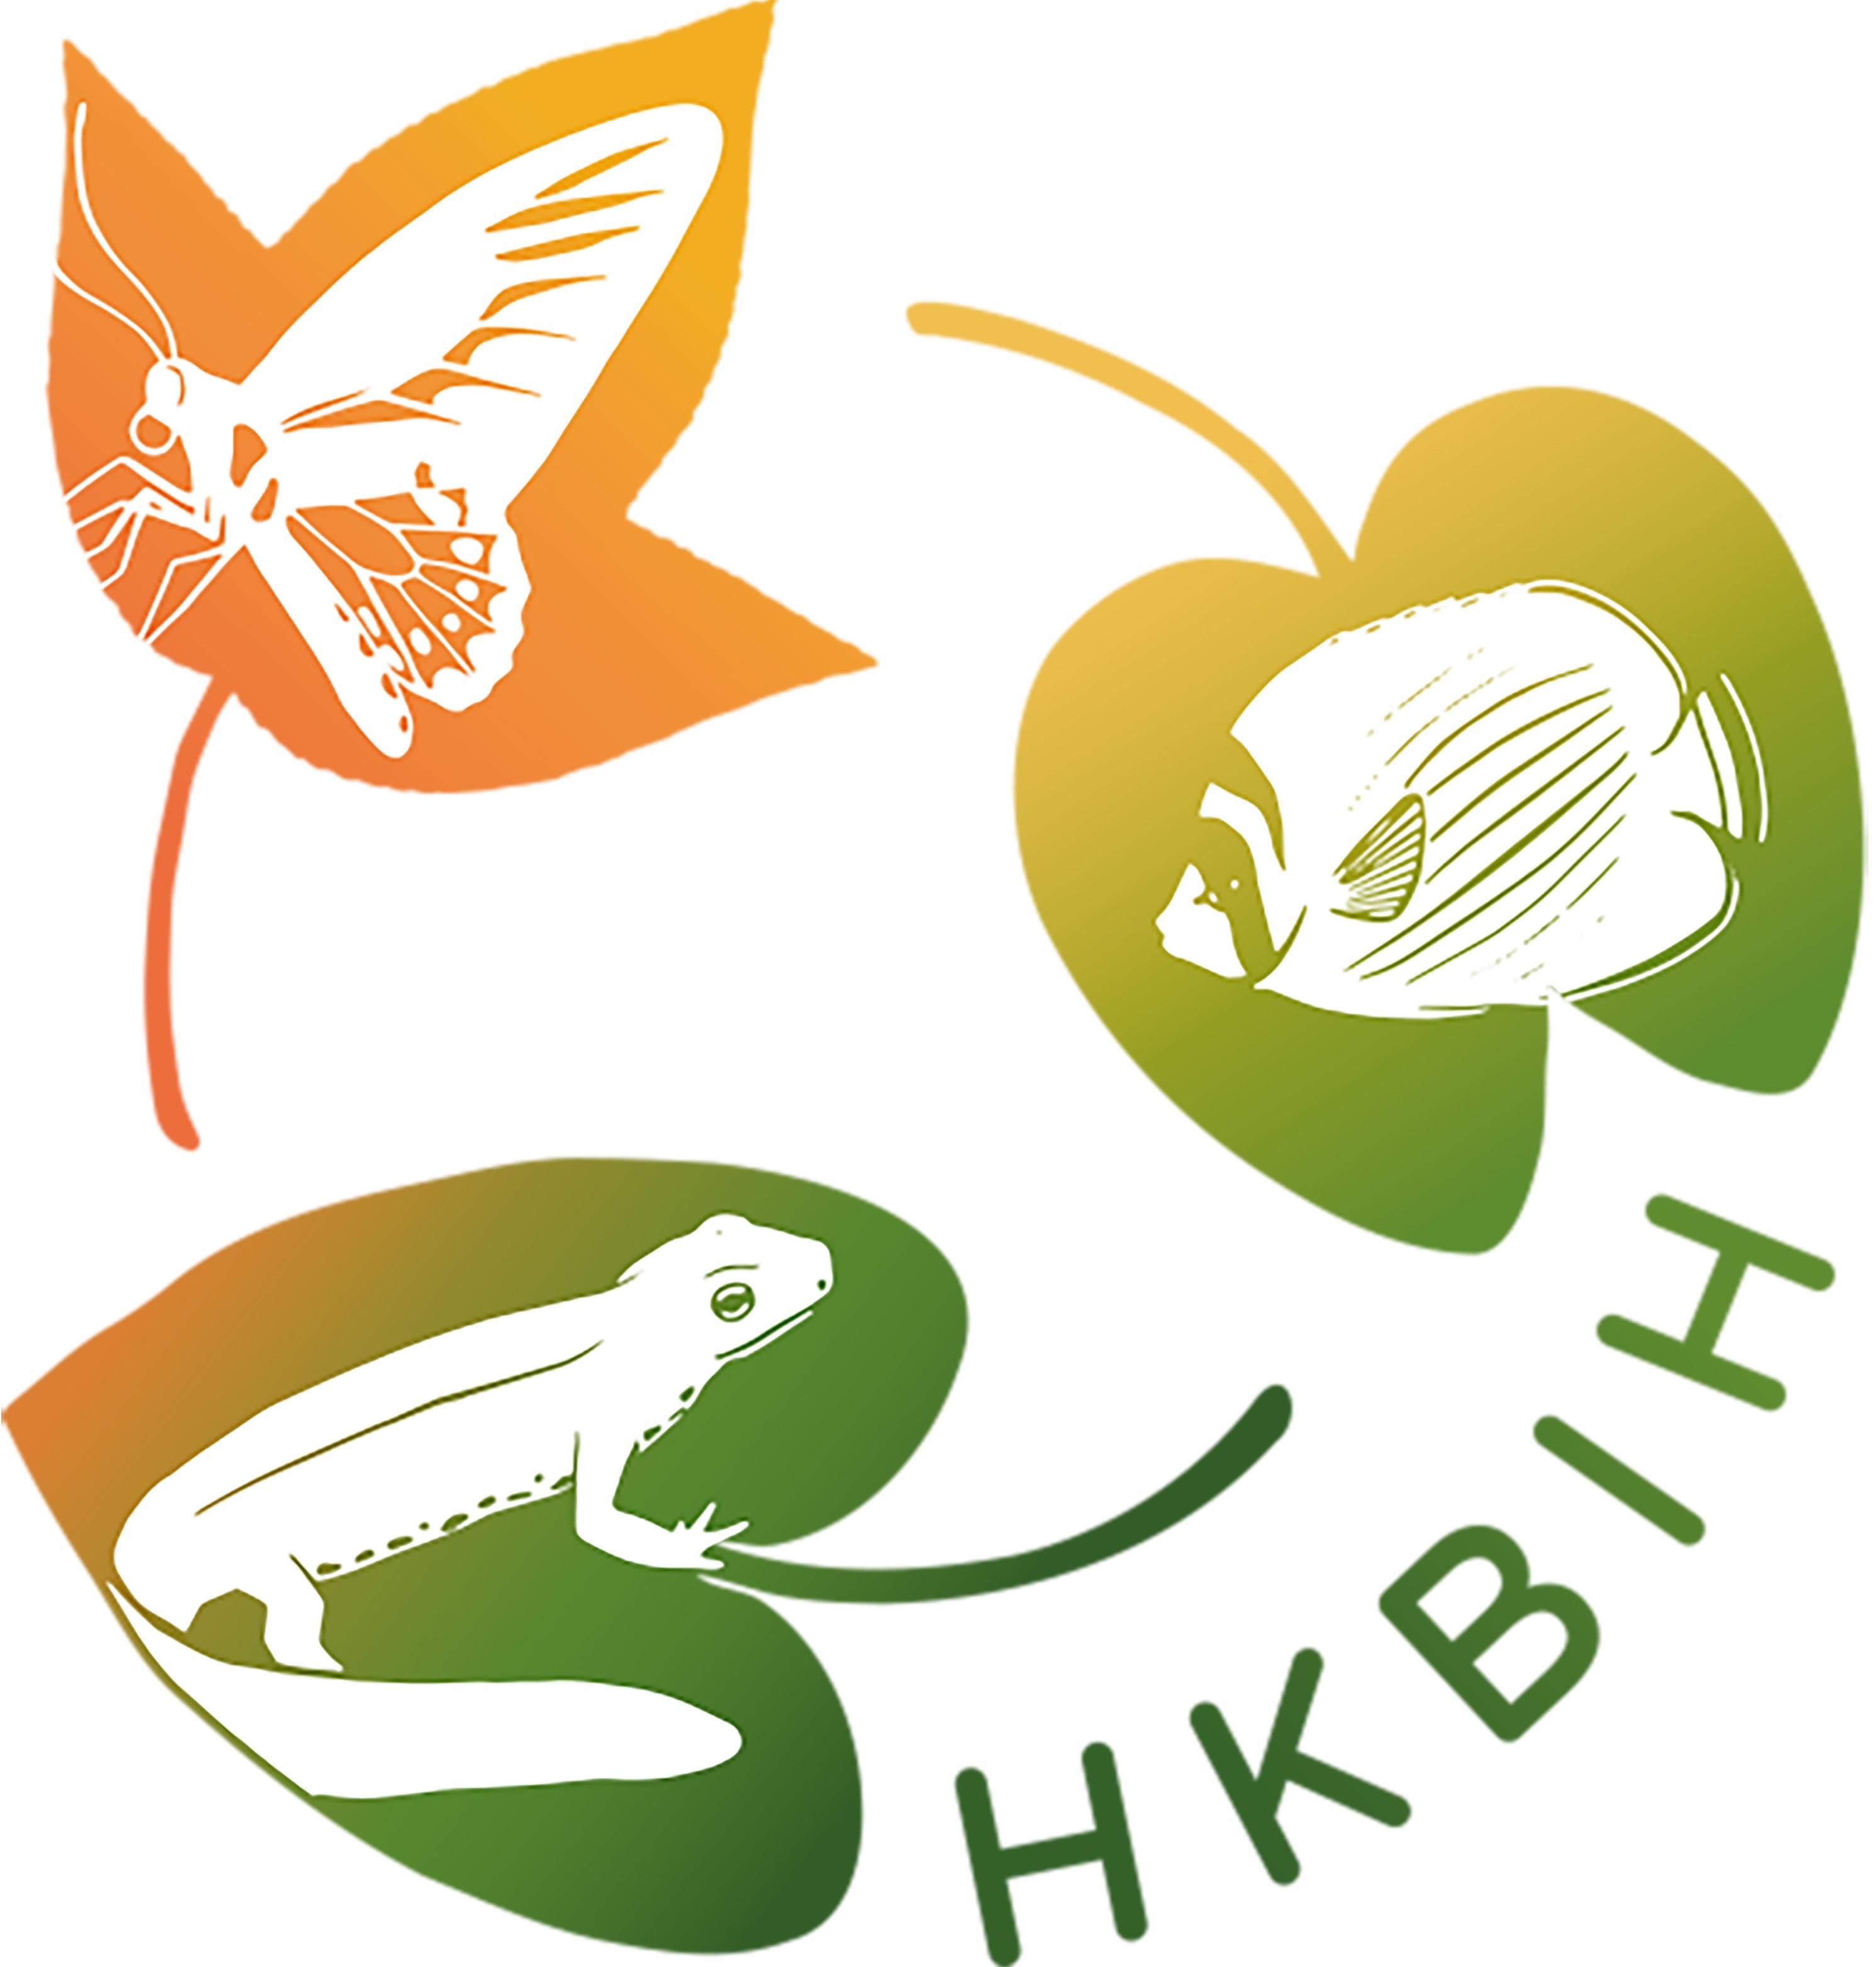 漁農自然護理署今日（三月一日）推出香港生物多樣性資訊站（資訊站），旨在促進公眾對本港生物多樣性的認識。資訊站標誌的設計概念源於本地生態系統的季節性、連結性和多樣性。